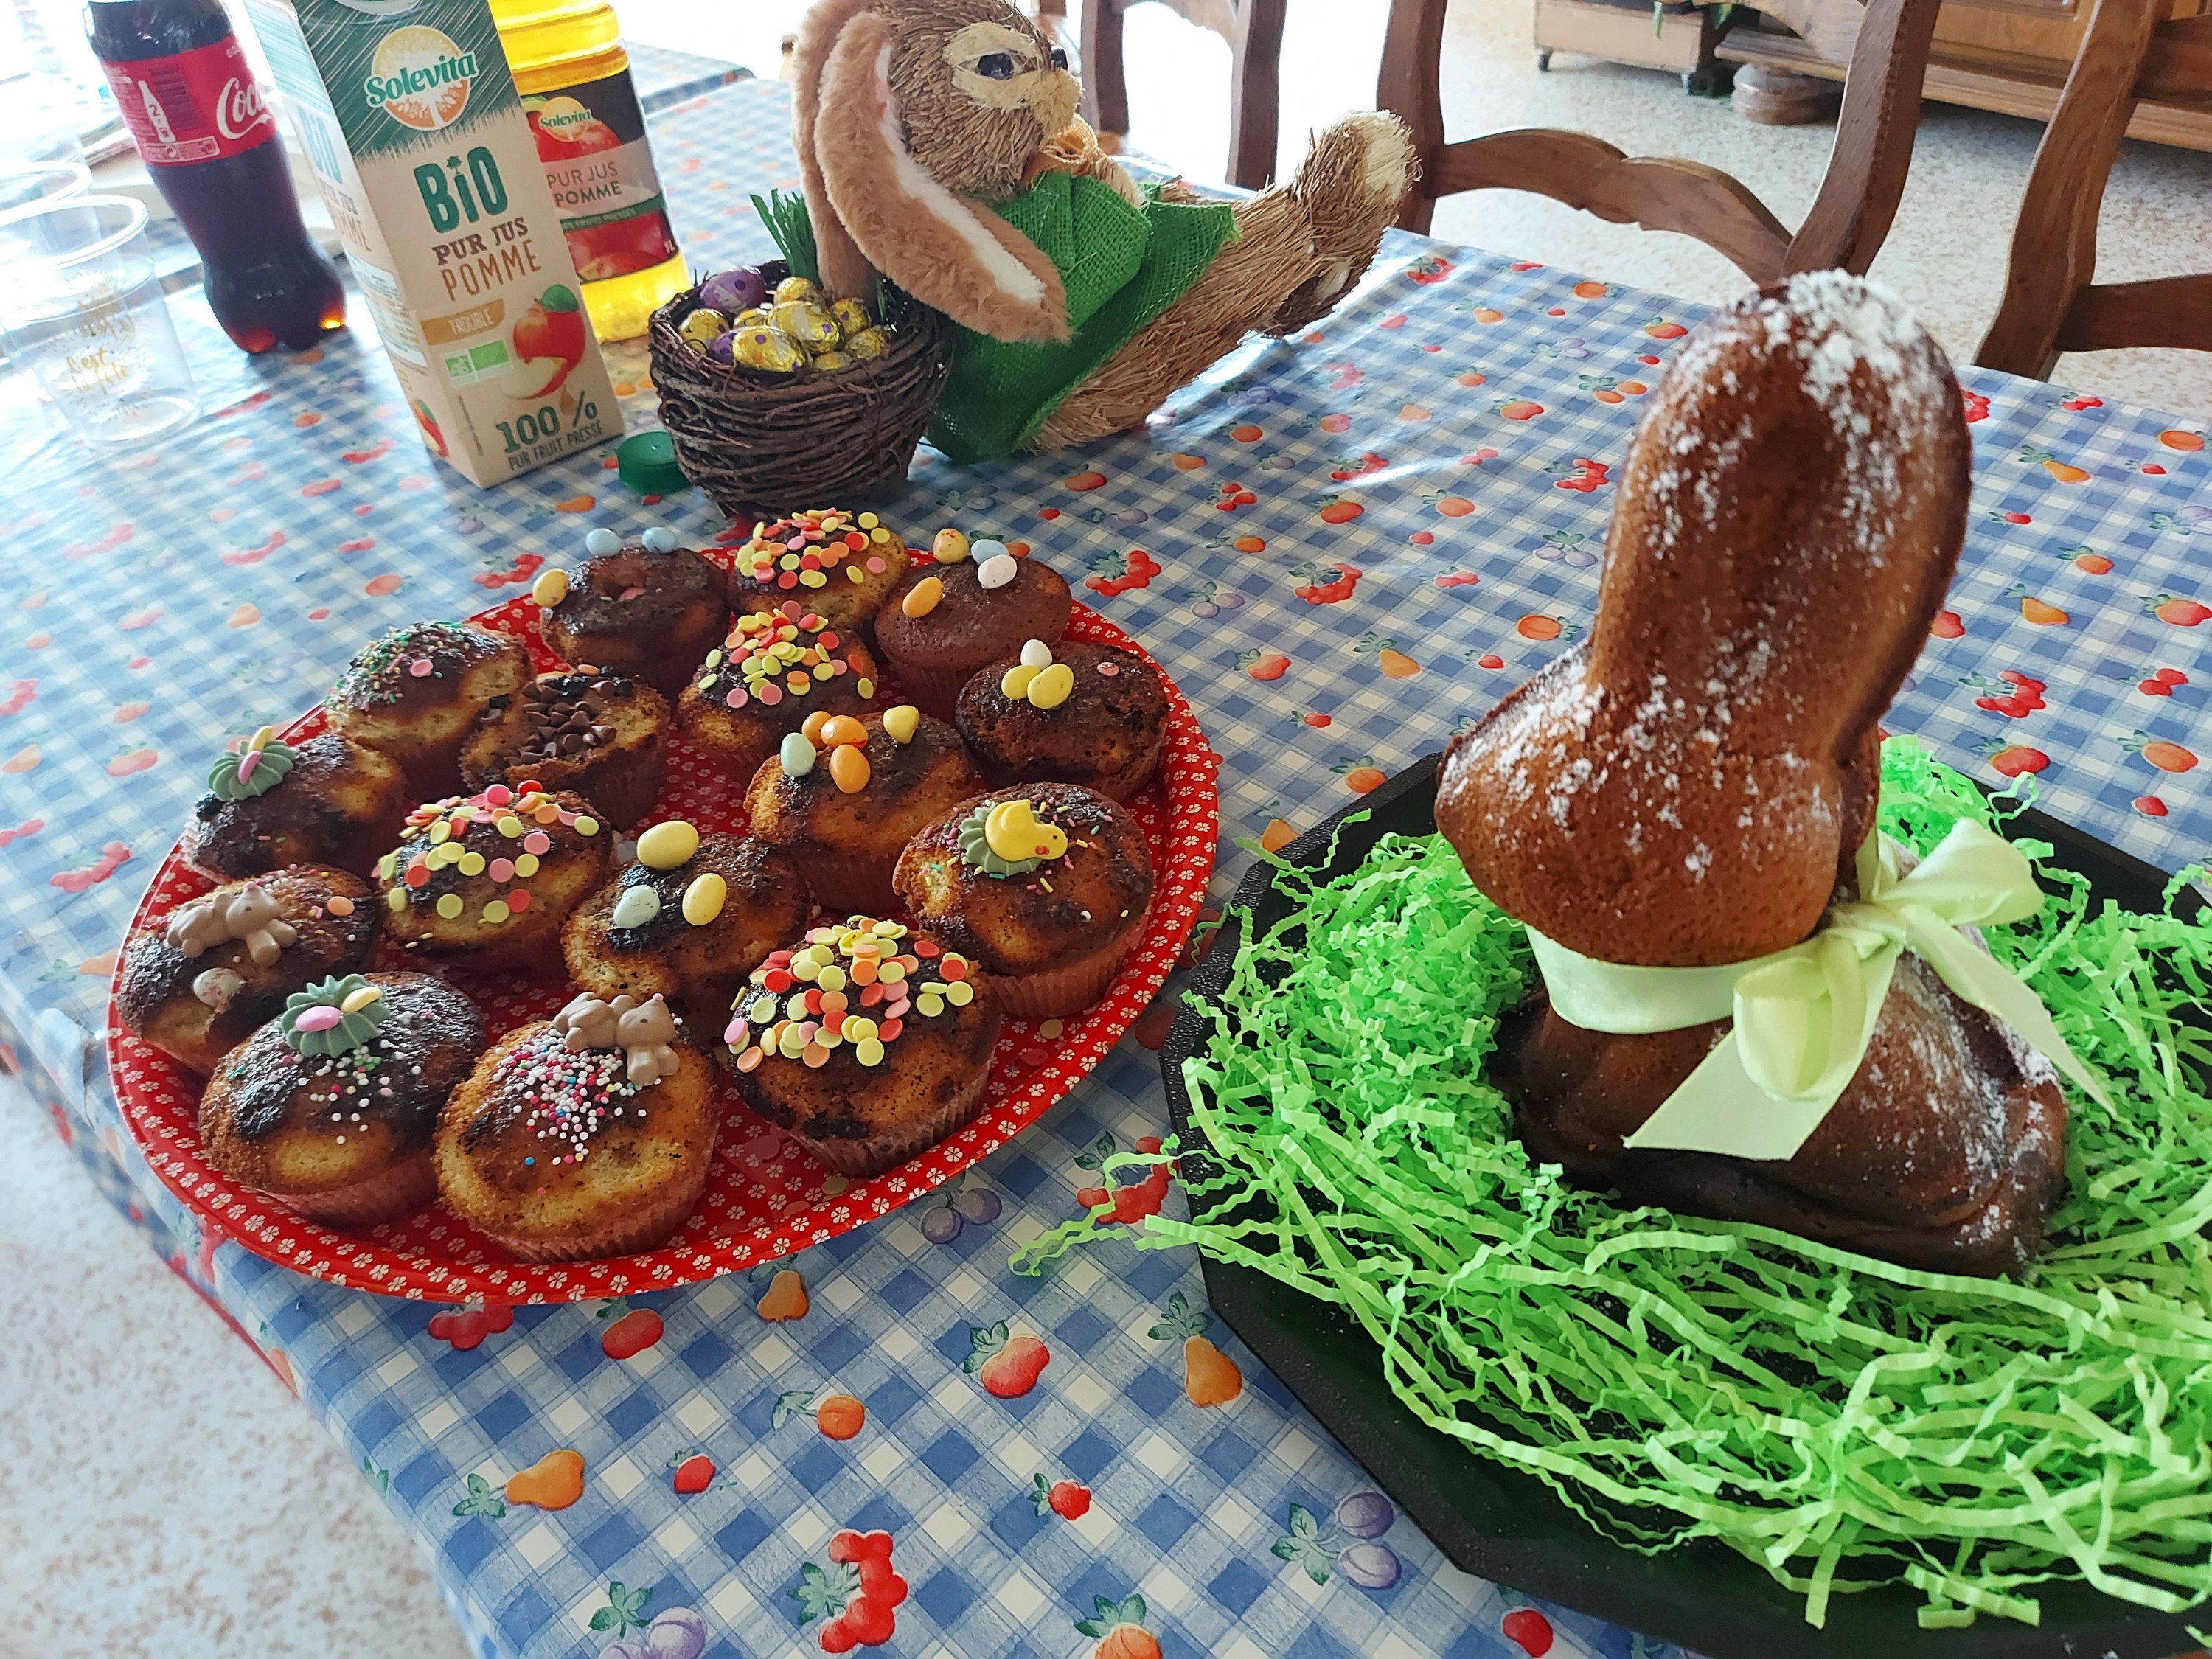 Le lapin et les cup-cakes décorés